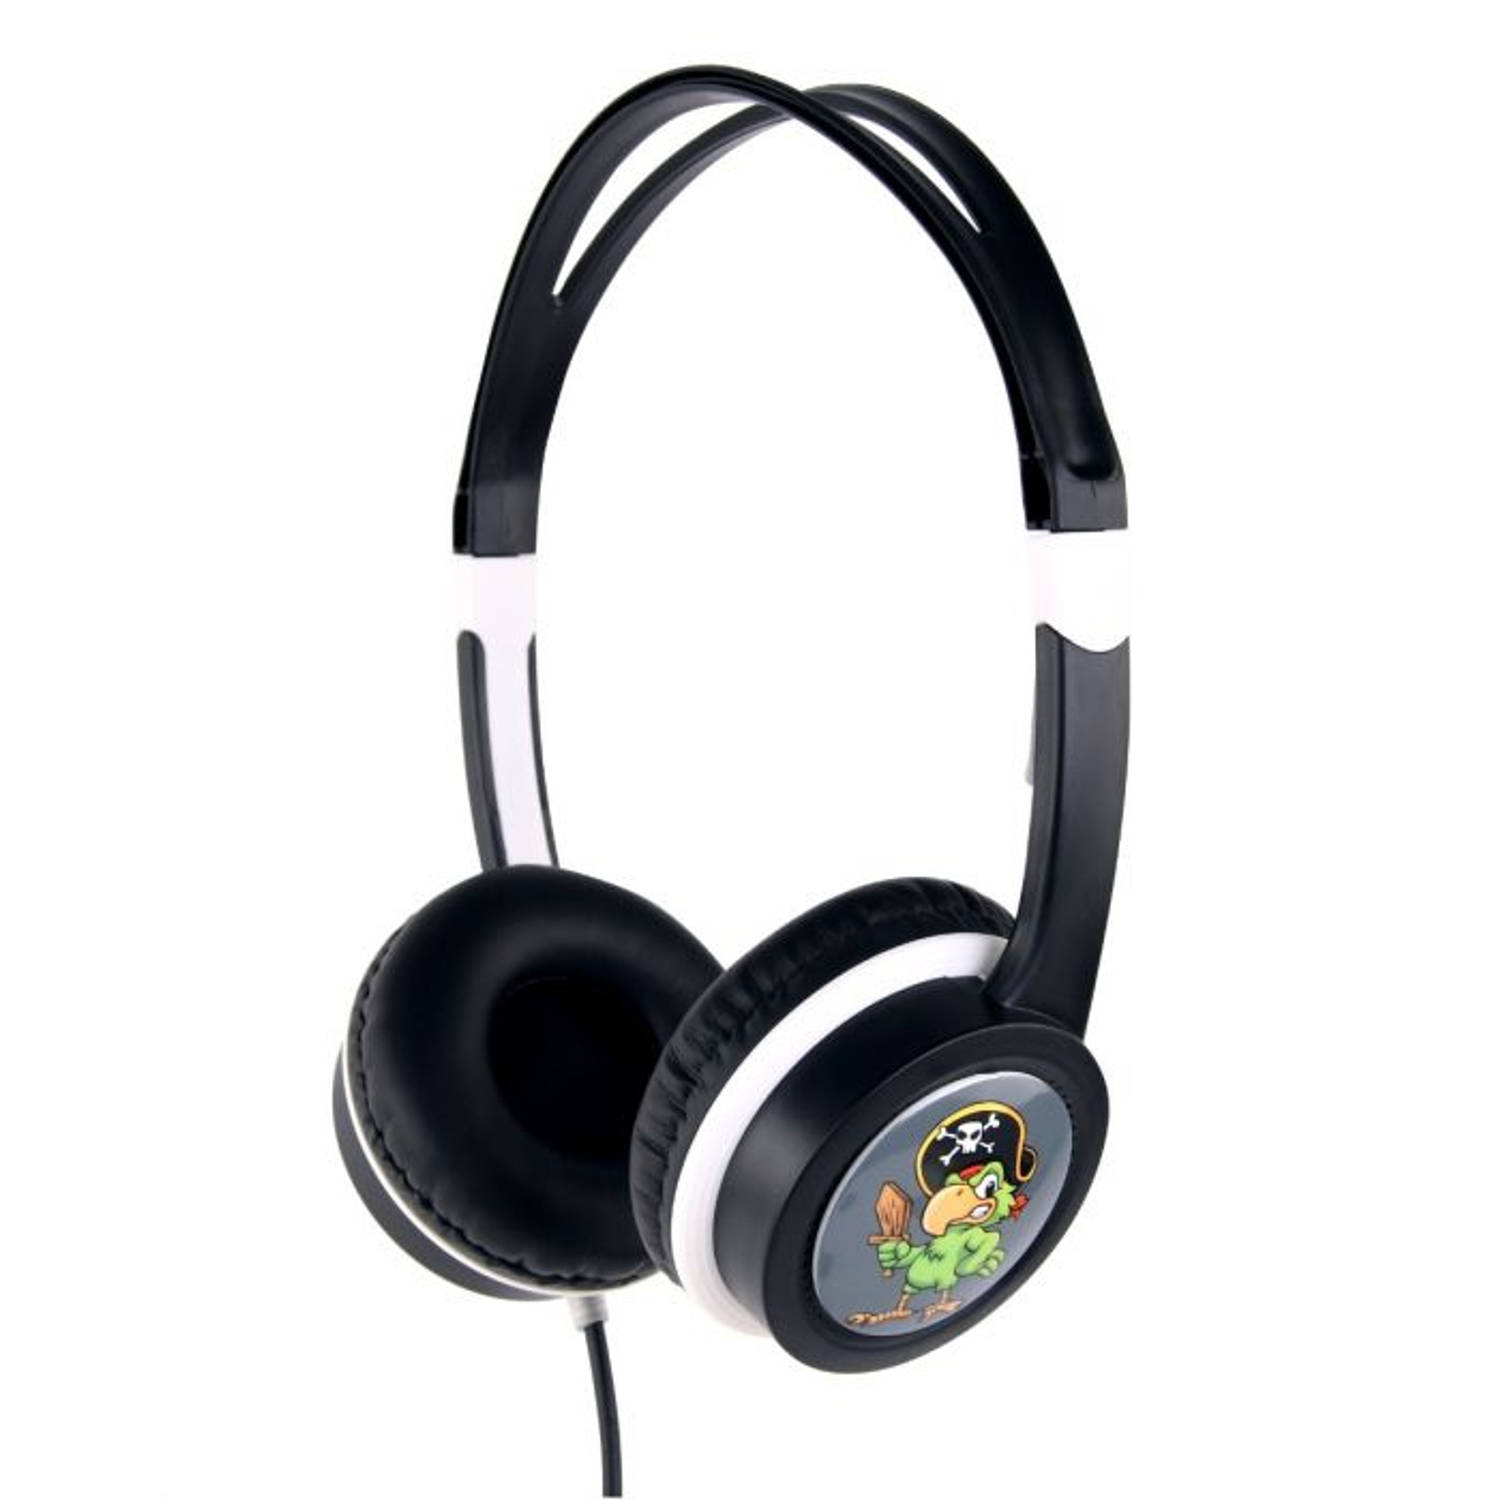 Gembird MHP-JR-BK Koptelefoon voor kinderen - Volumebegrenzing - On-ear - Zwart